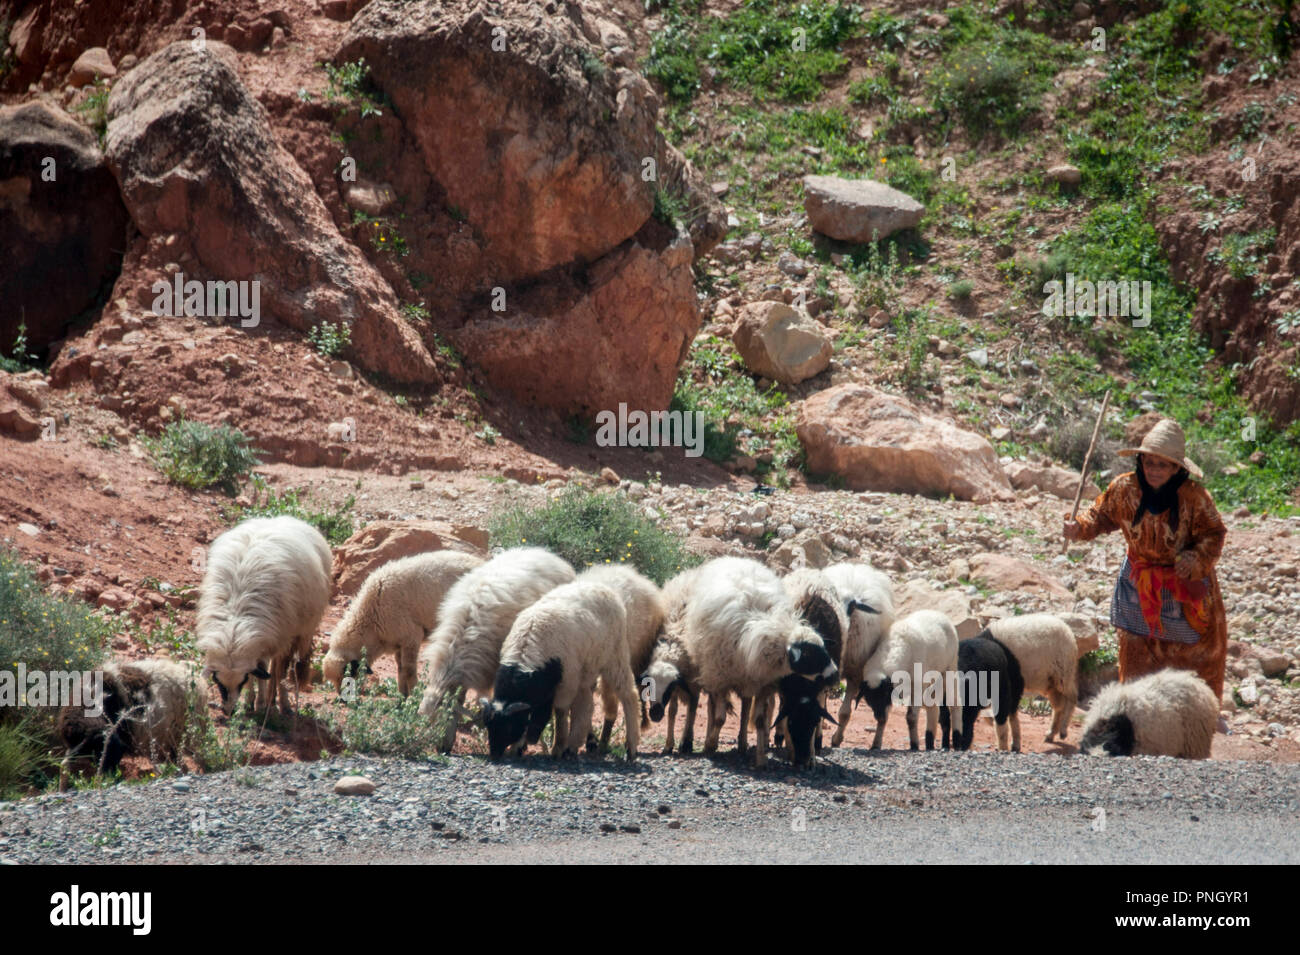 25-02-11. Marrakech, Morocco. A woman / shepheress herding sheep on a road climbing to the Atlas mountains to the south of Marrakech. Photo © Simon Gr Stock Photo